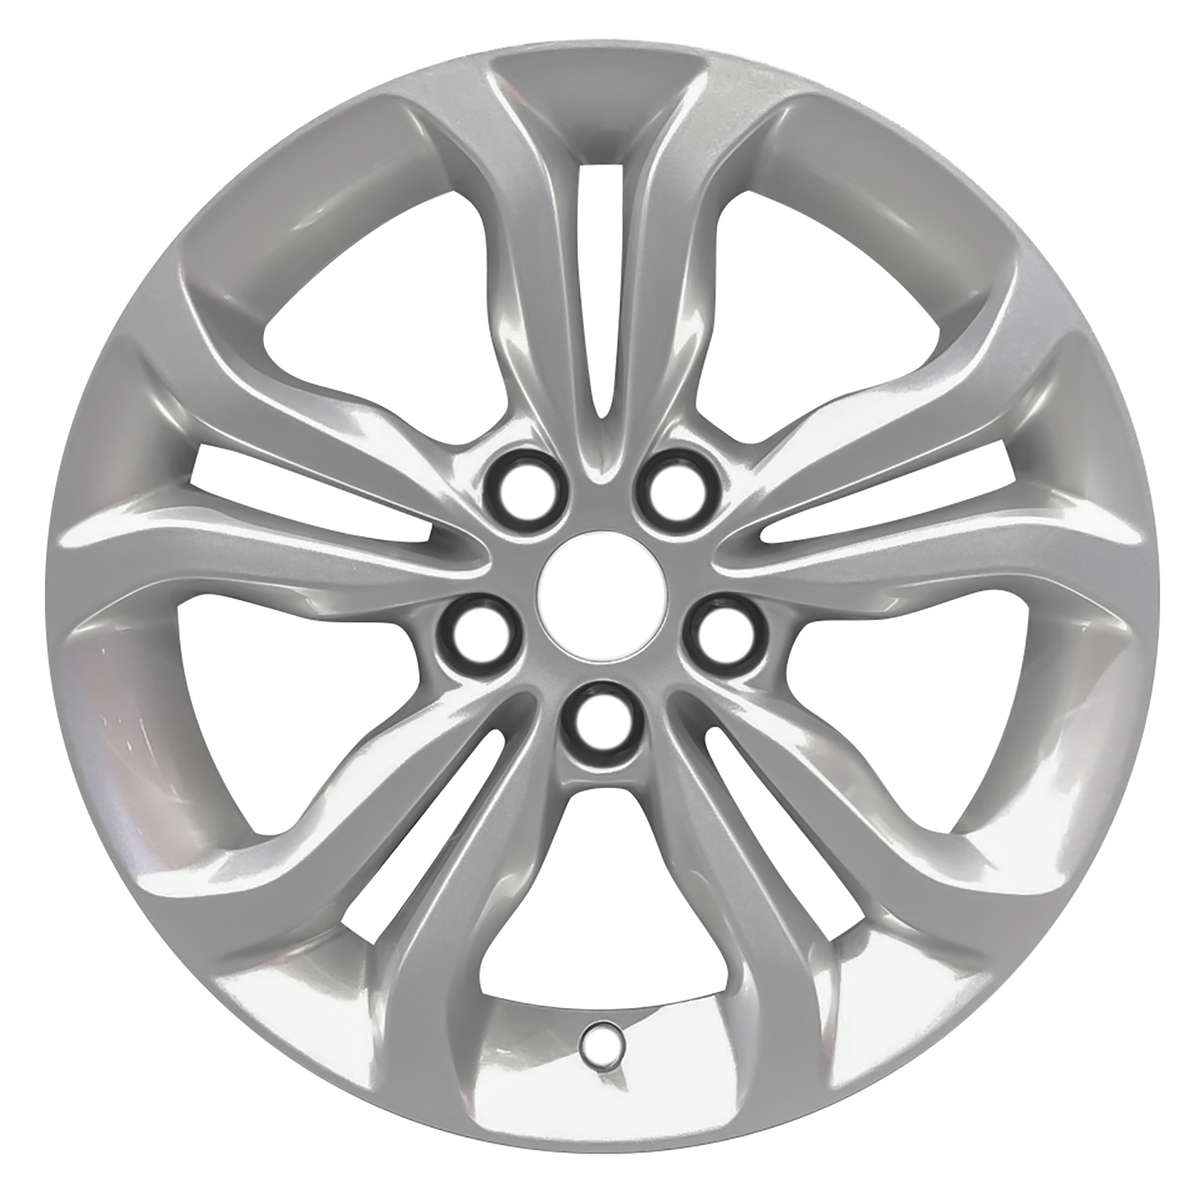 2019 Chevrolet Cruze New 16" Replacement Wheel Rim RW5879S